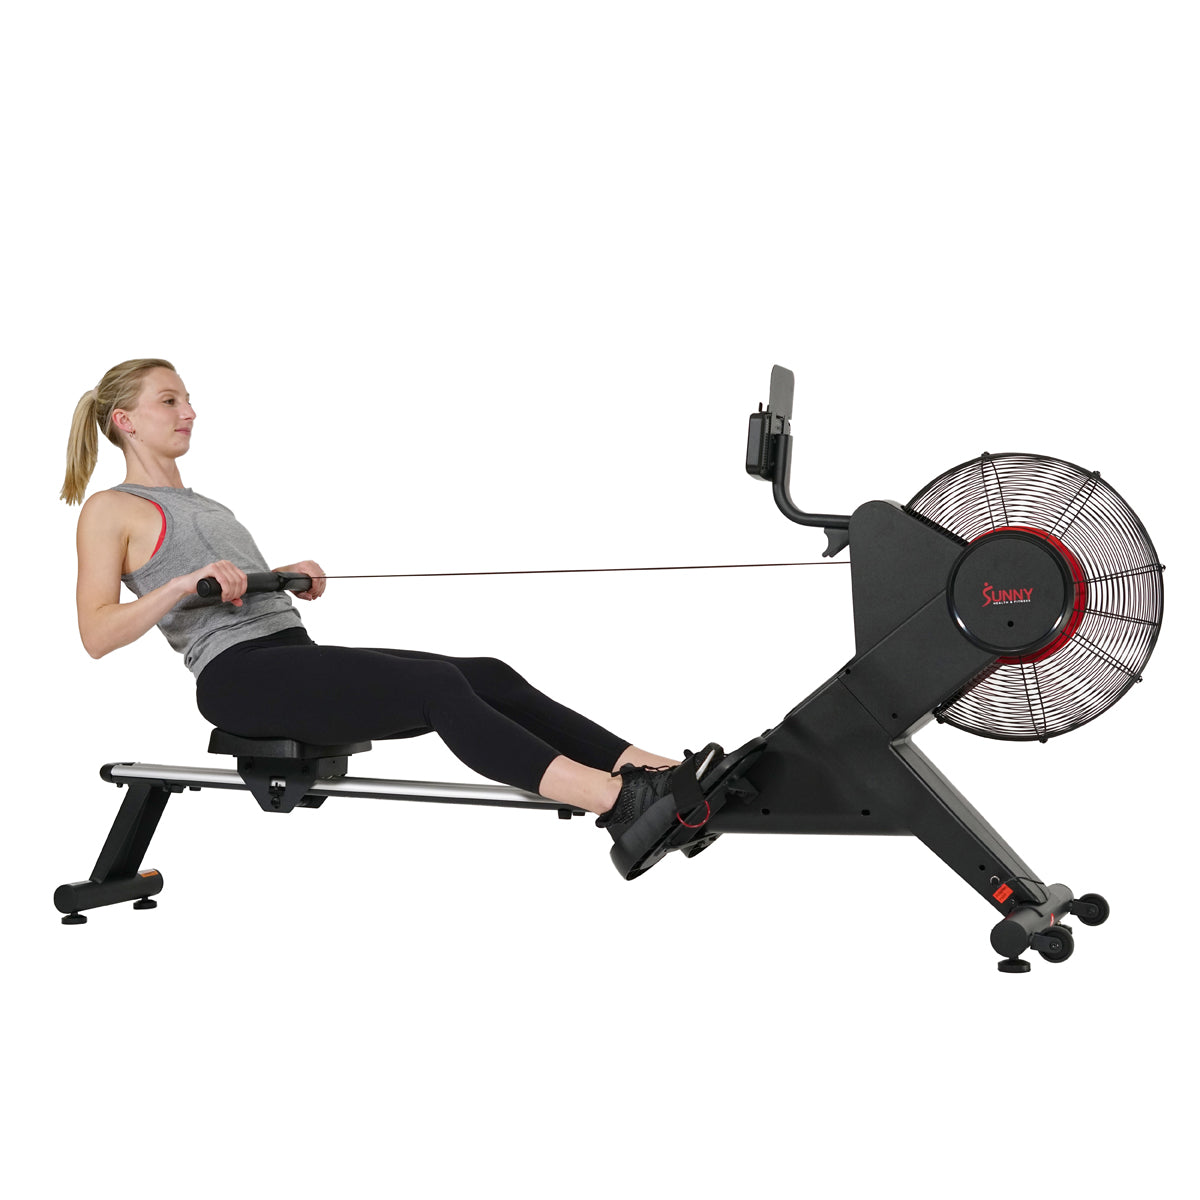 Carbon Premium Air Magnetic Rowing Machine